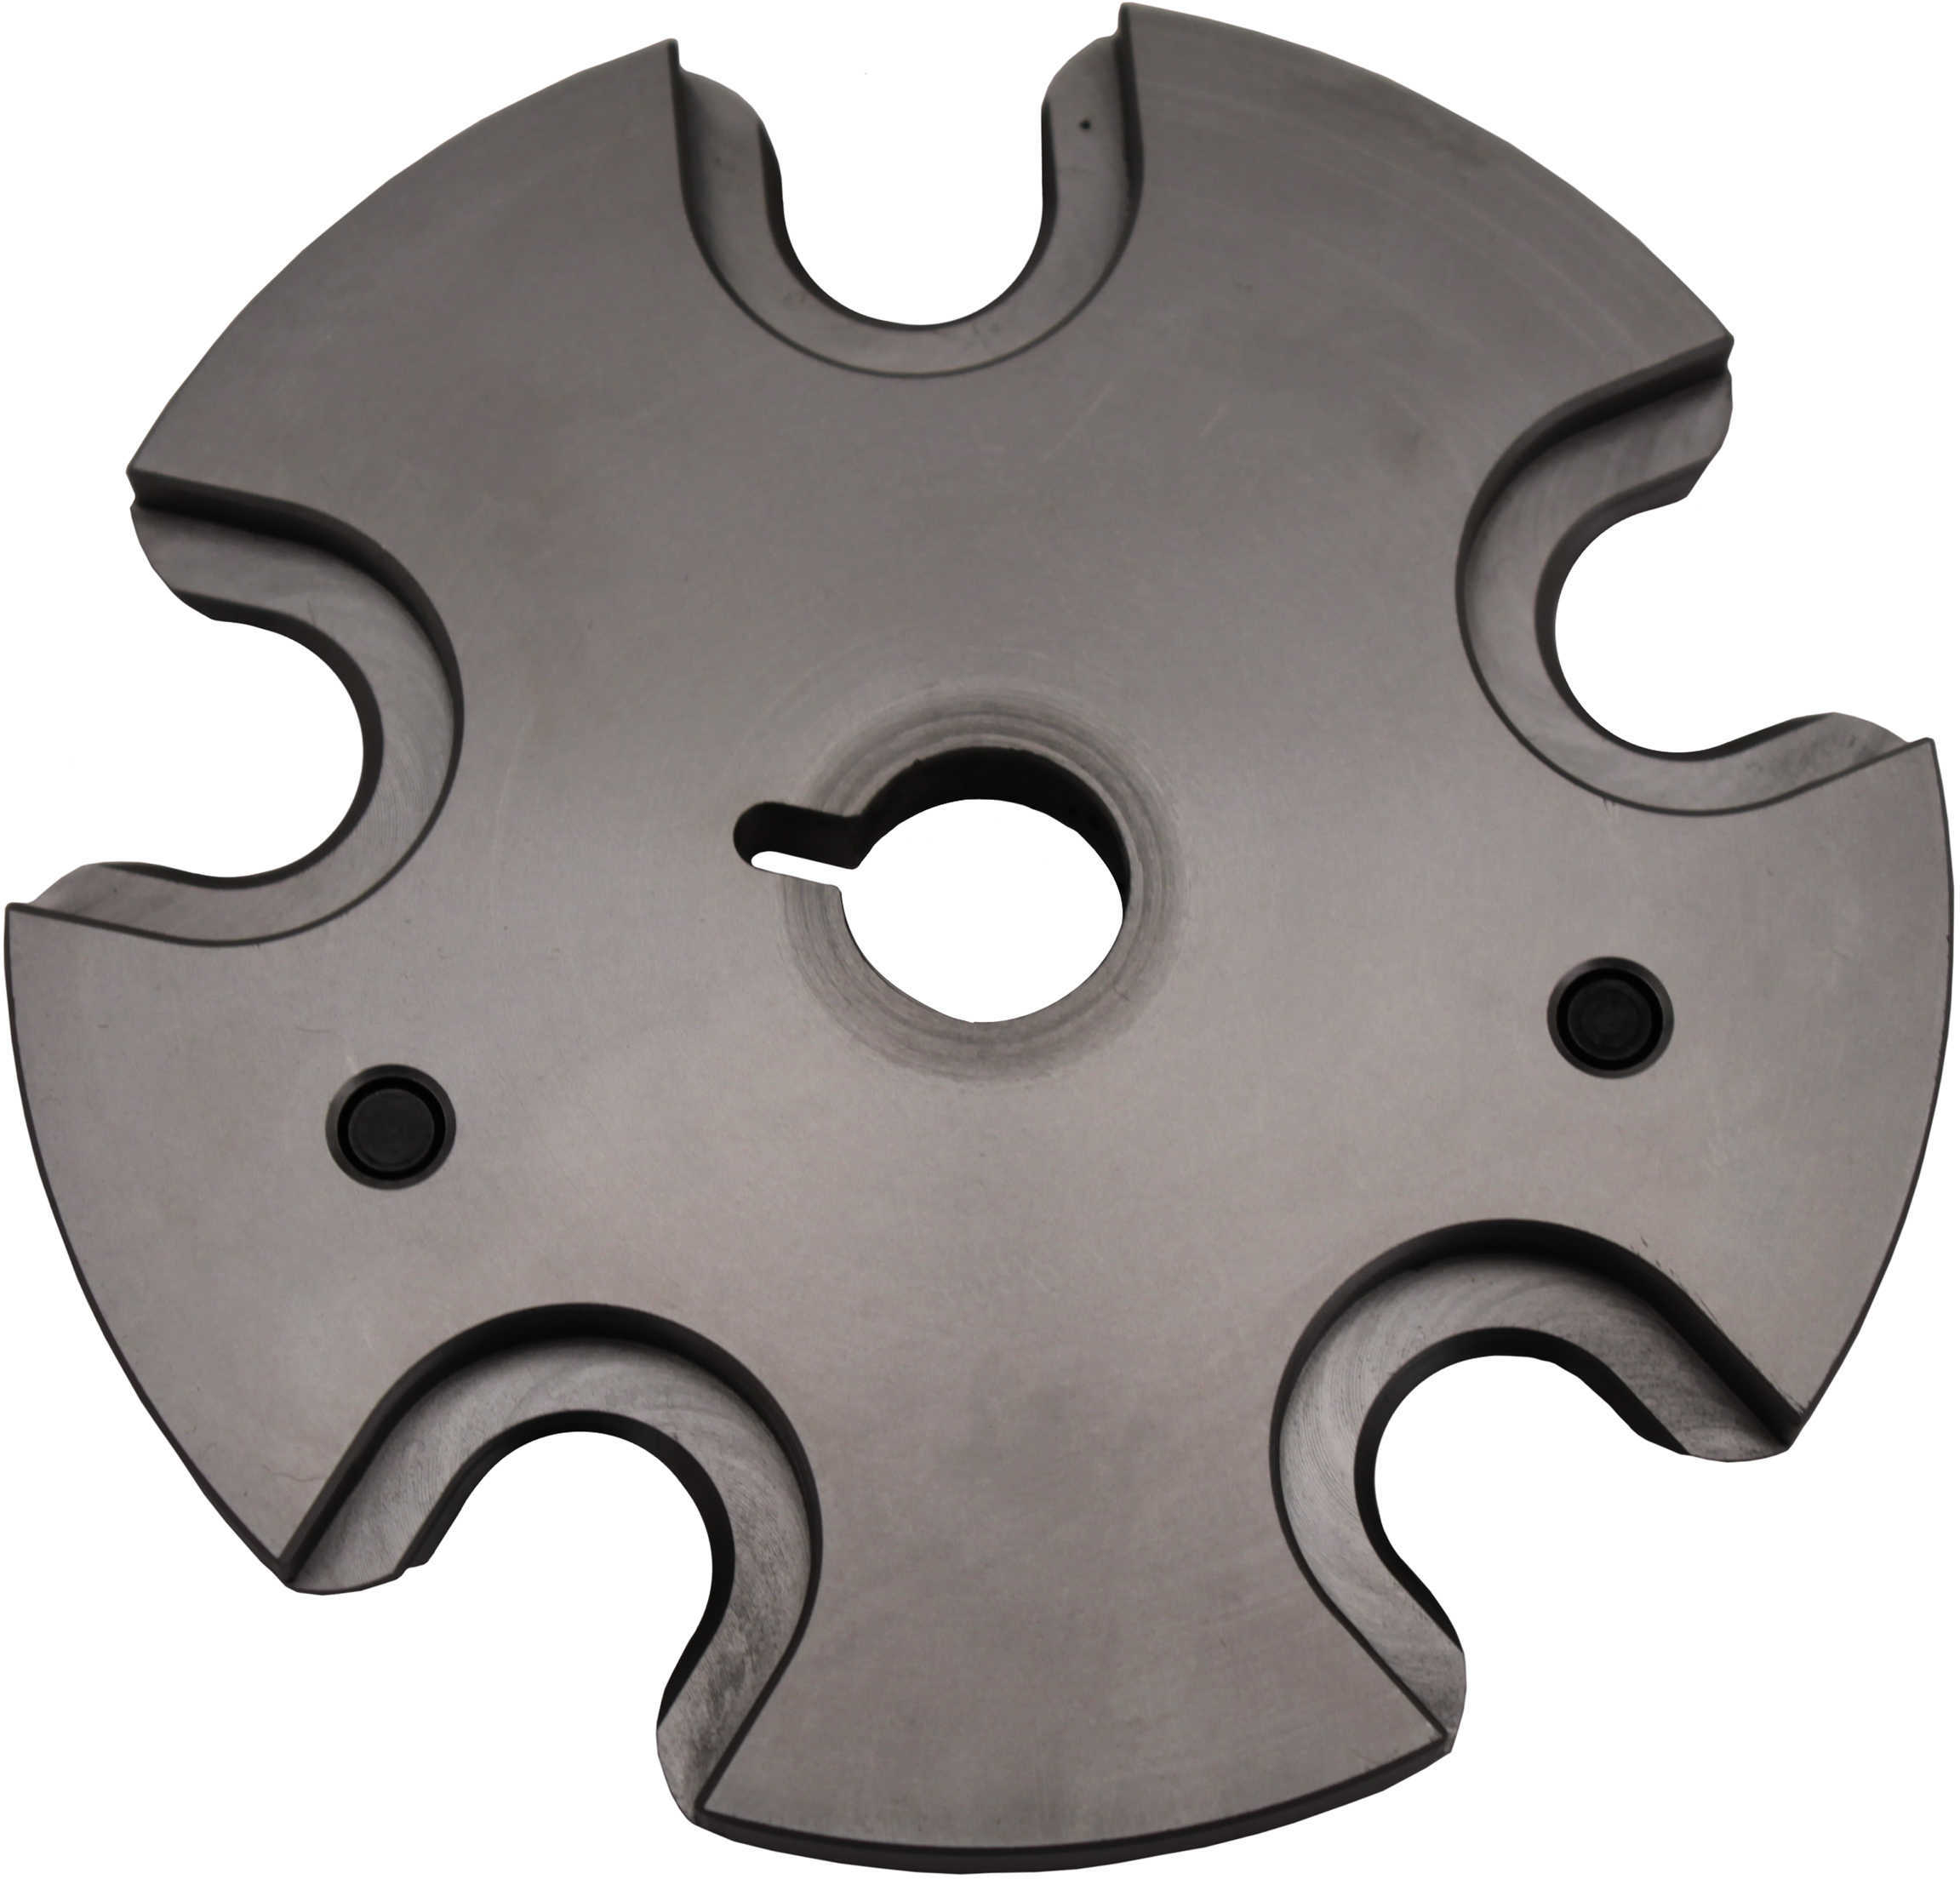 Hornady Lock-N-Load AP Progressive Press Shell Plate - #35 Size